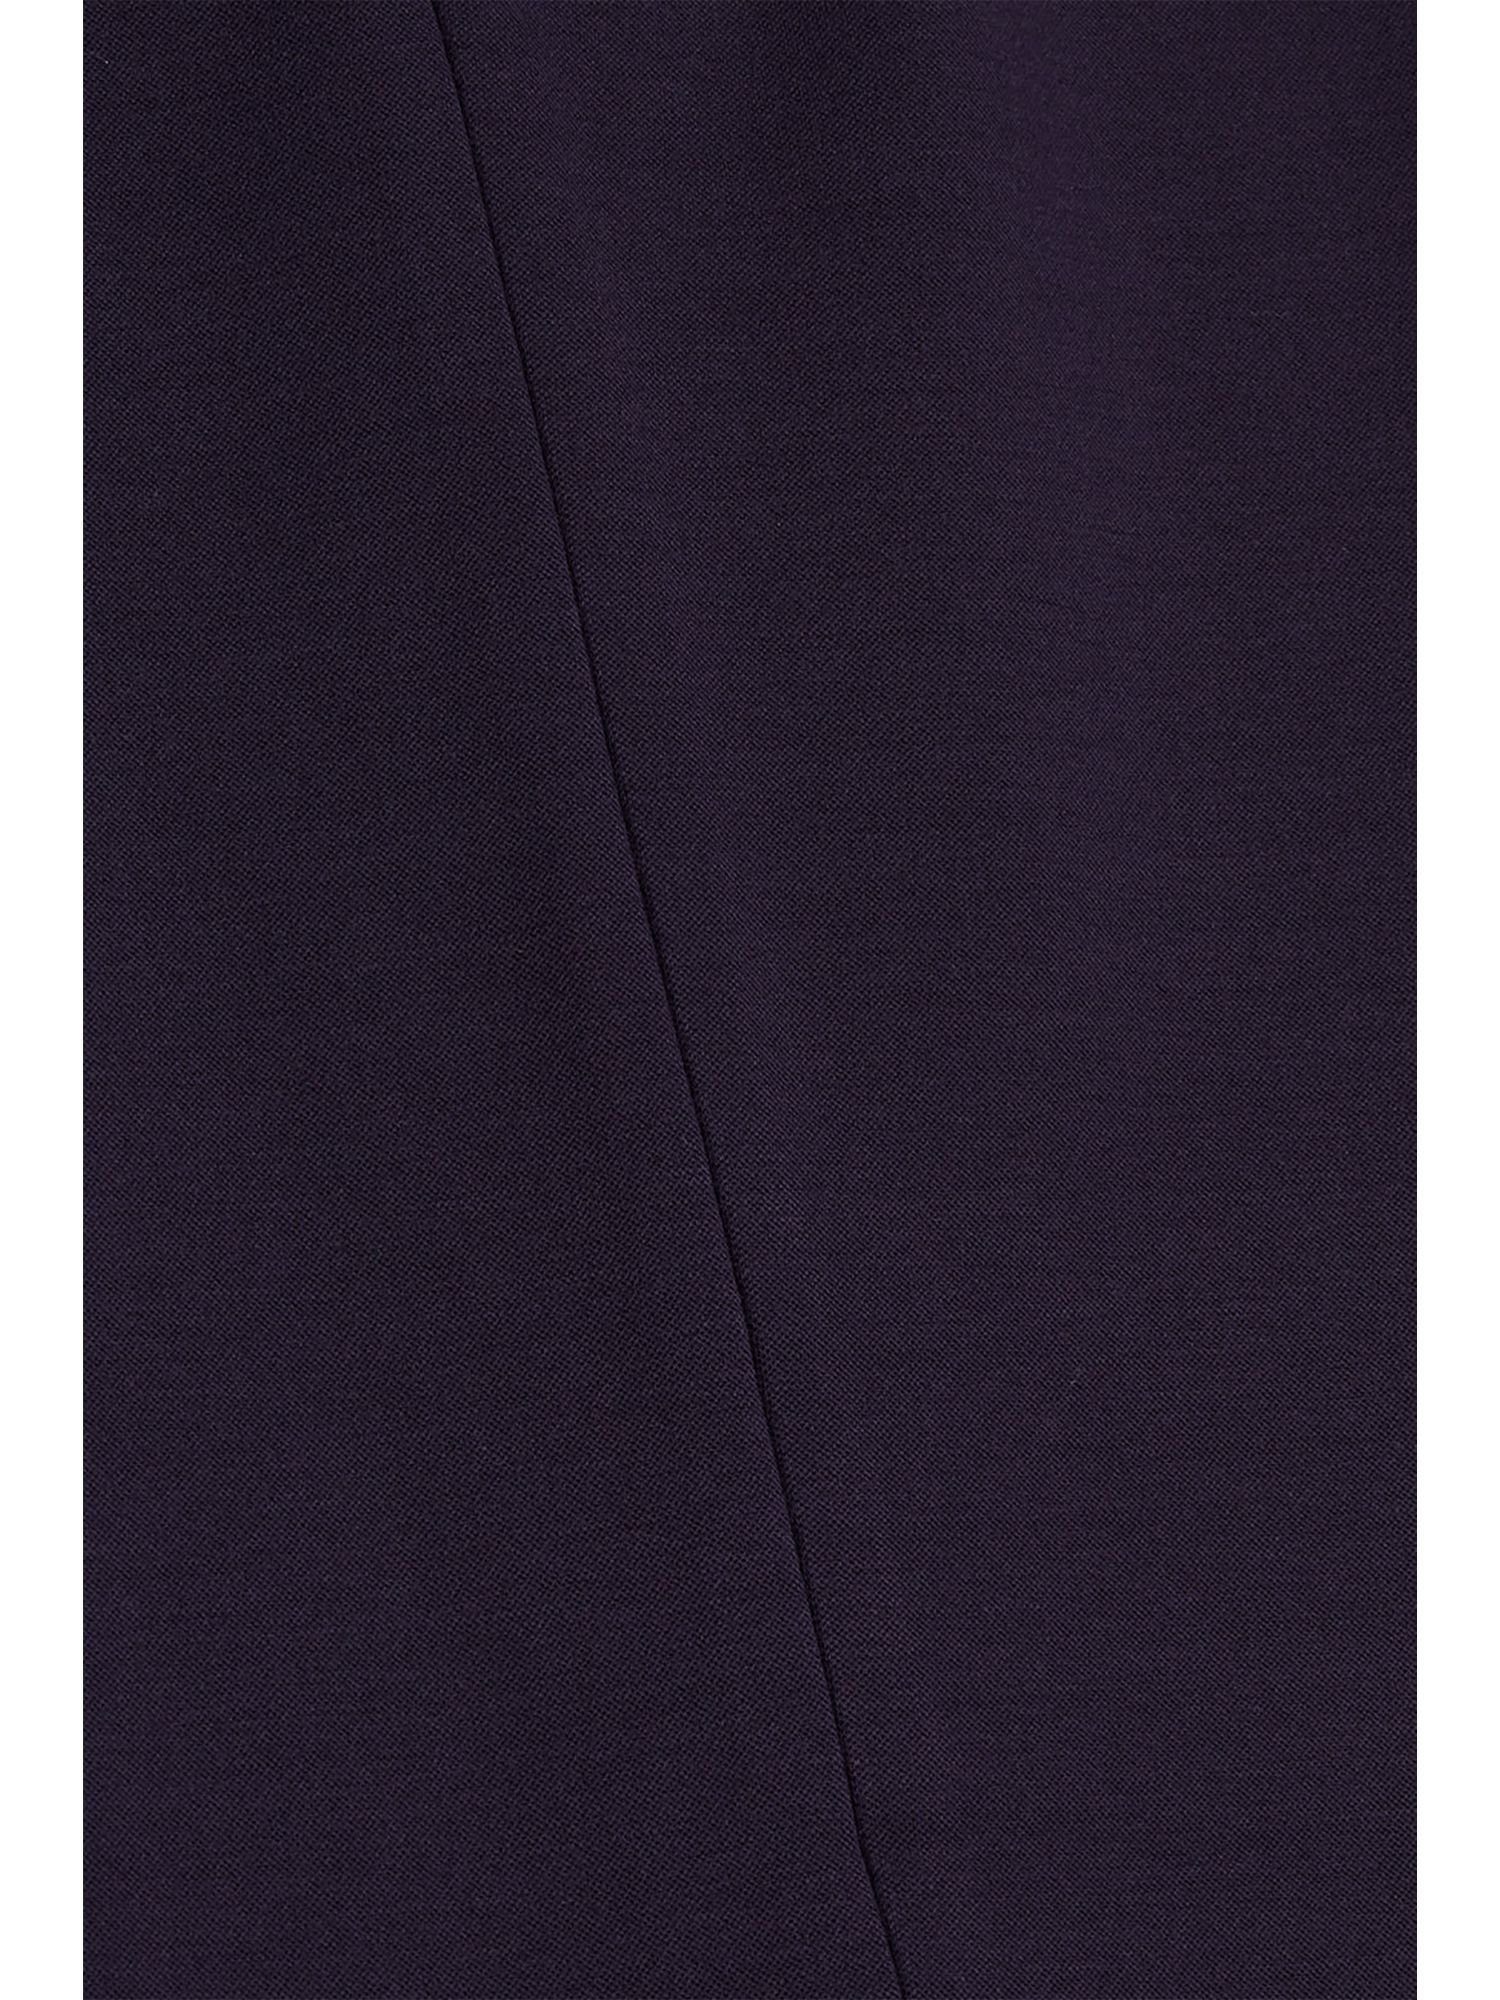 Esprit Collection Bein & PUNTO Mix NAVY Hose Match mit Anzughose SPORTY geradem